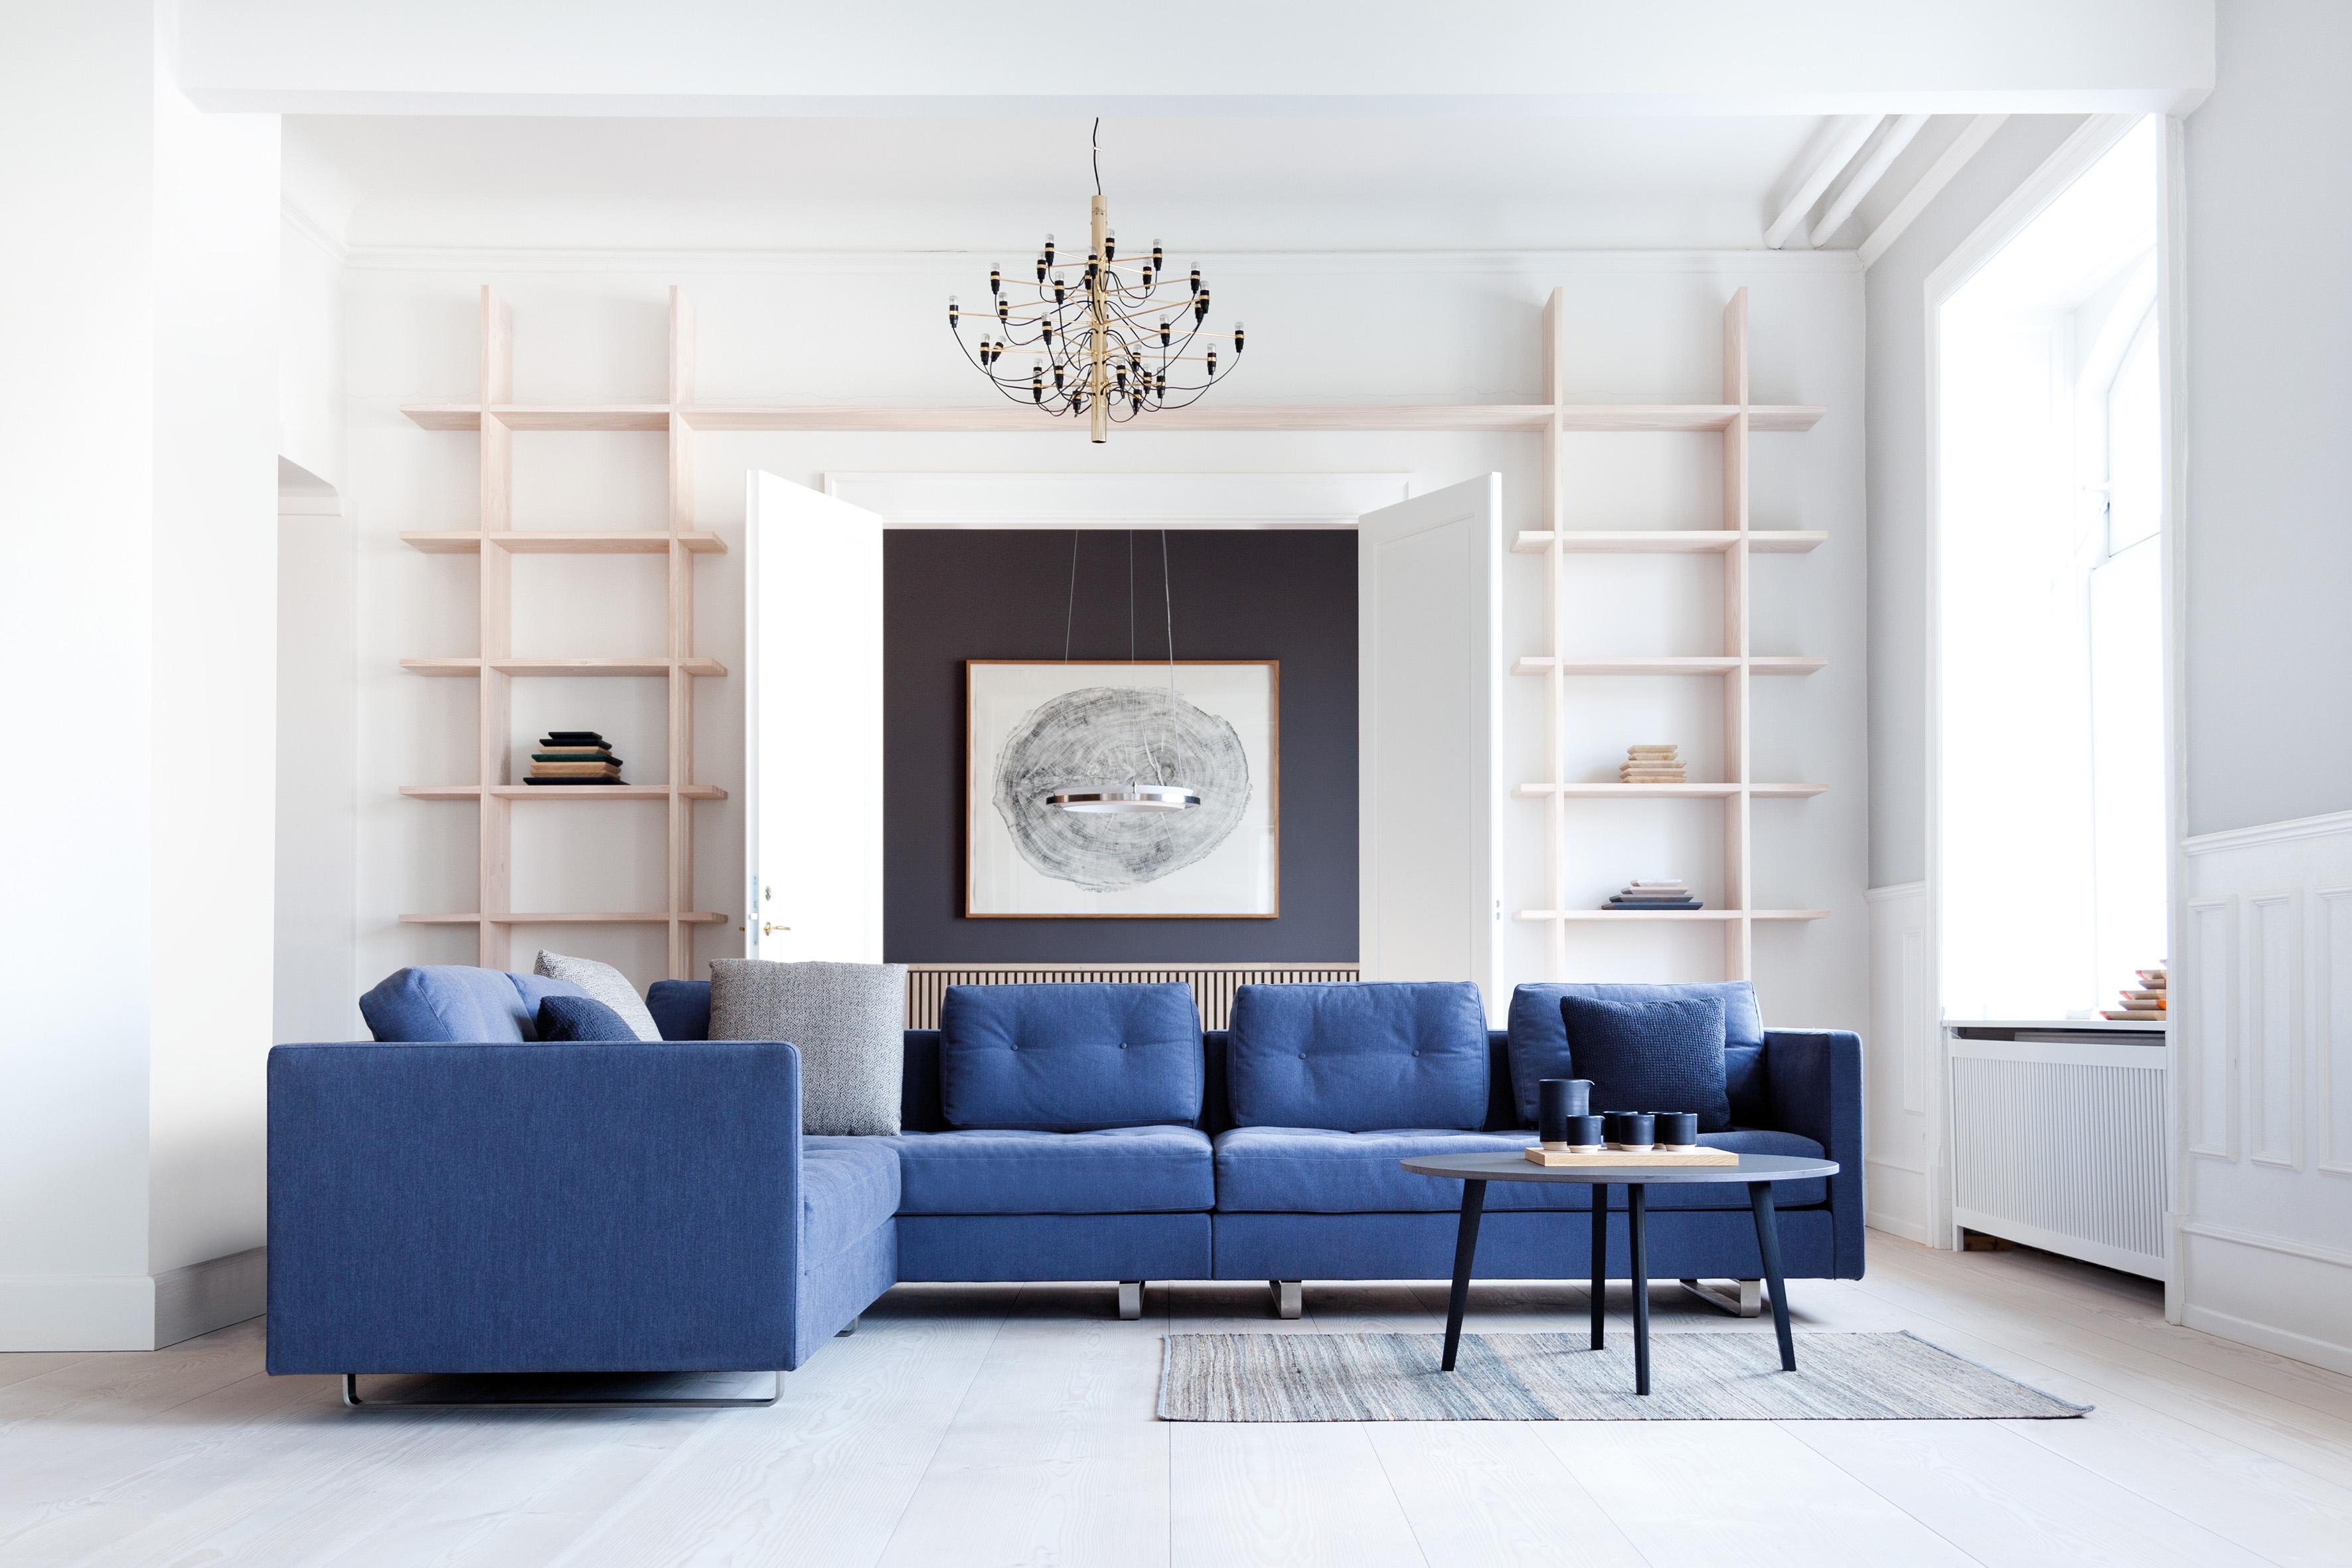 Blaues Ecksofa im hellen Wohnbereich #couchtisch #wohnzimmer #ecksofa #kronleuchter #sofa #blauessofa ©Erik Jørgensen